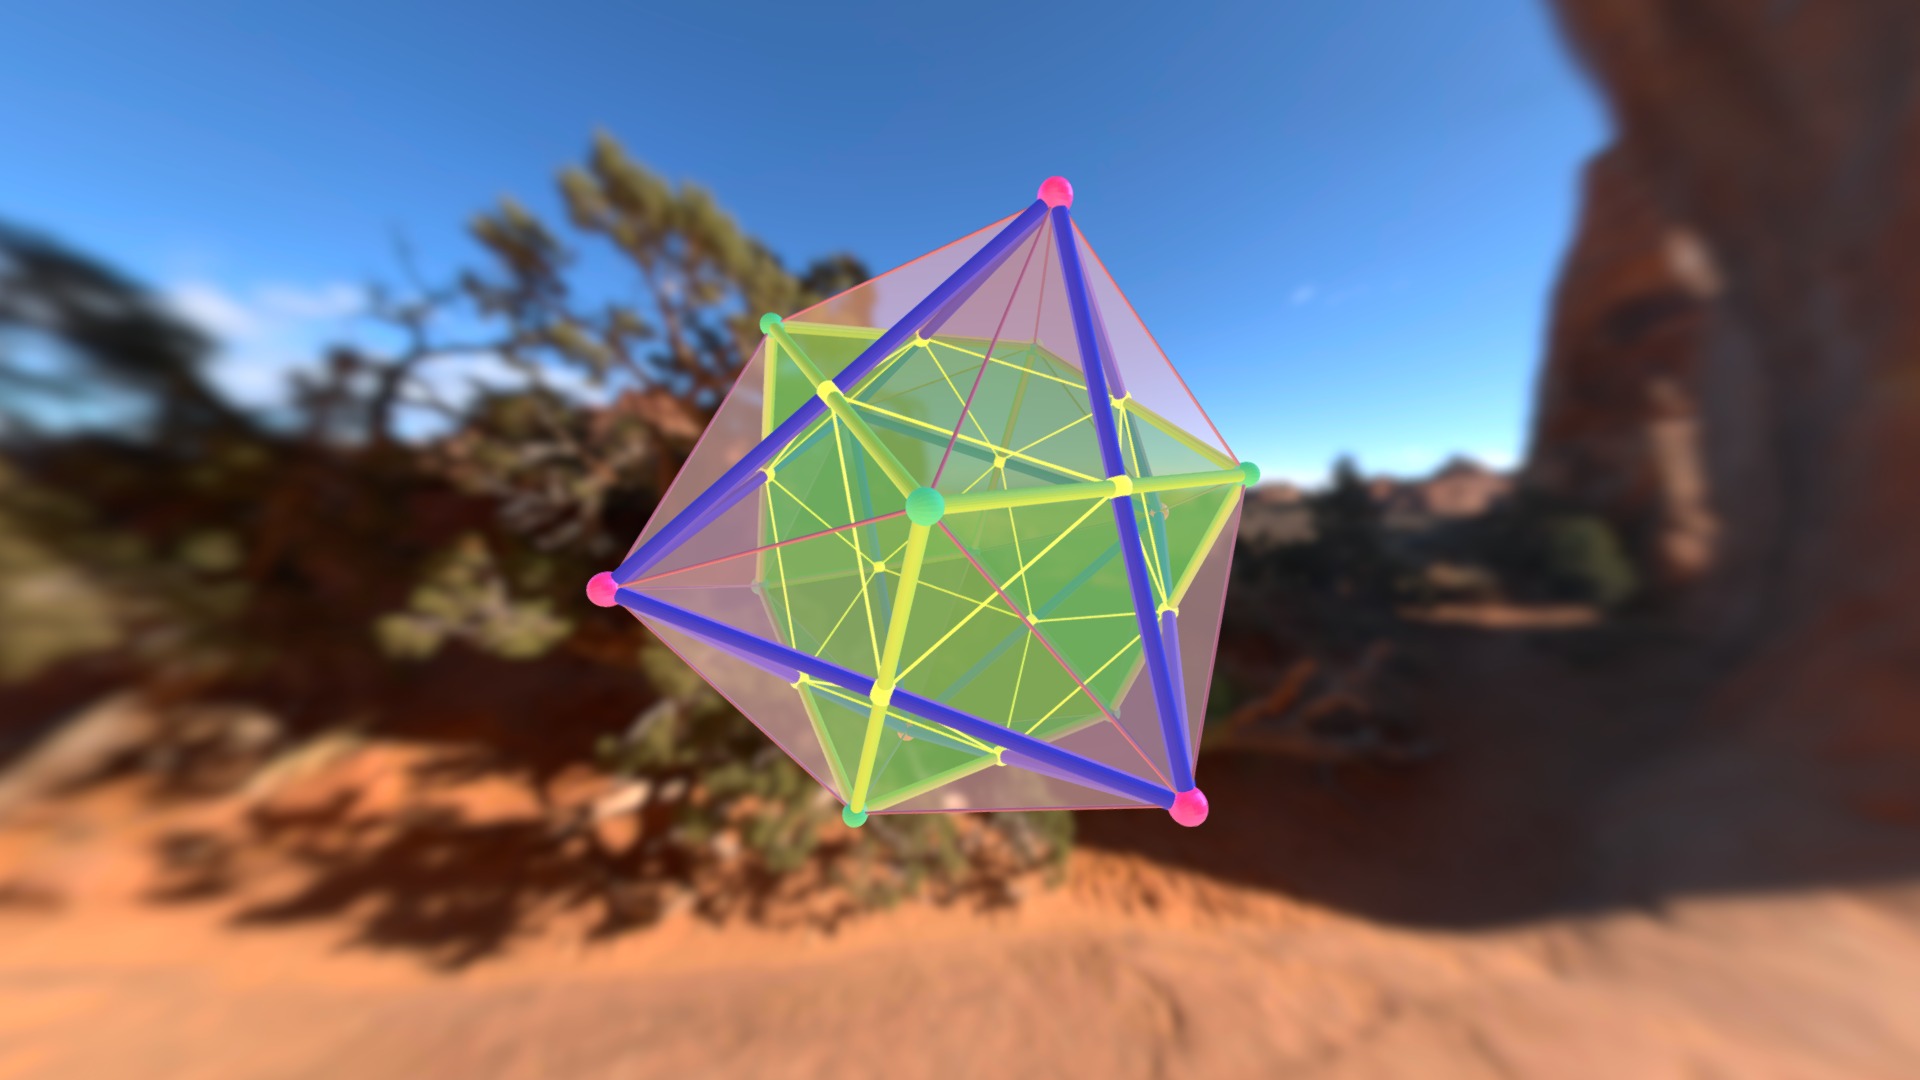 3D model cube octa dual jewel - This is a 3D model of the cube octa dual jewel. The 3D model is about a paper umbrella in the sand.